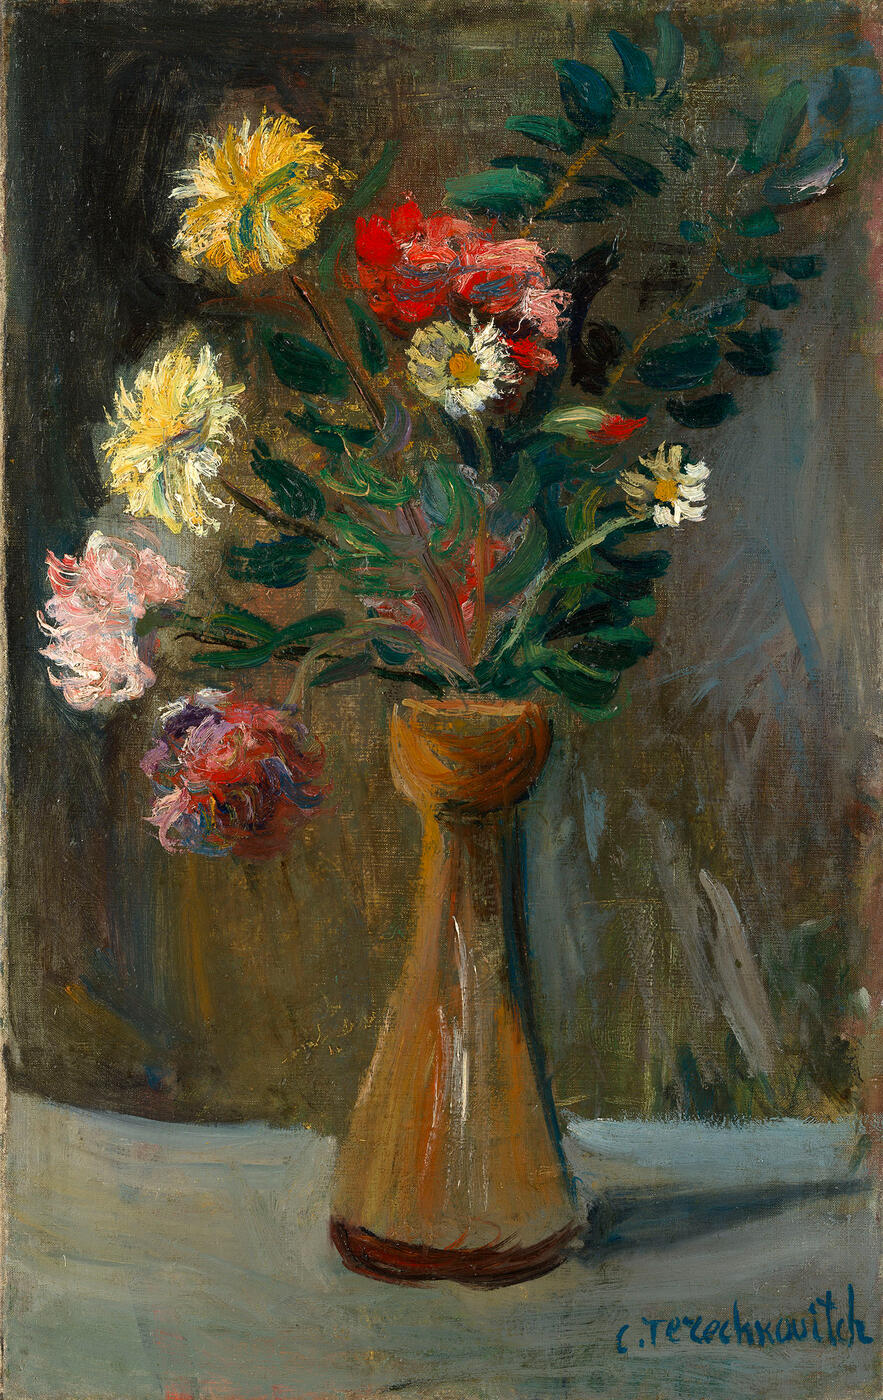 Chrysanthemums and Dasies in a Vase